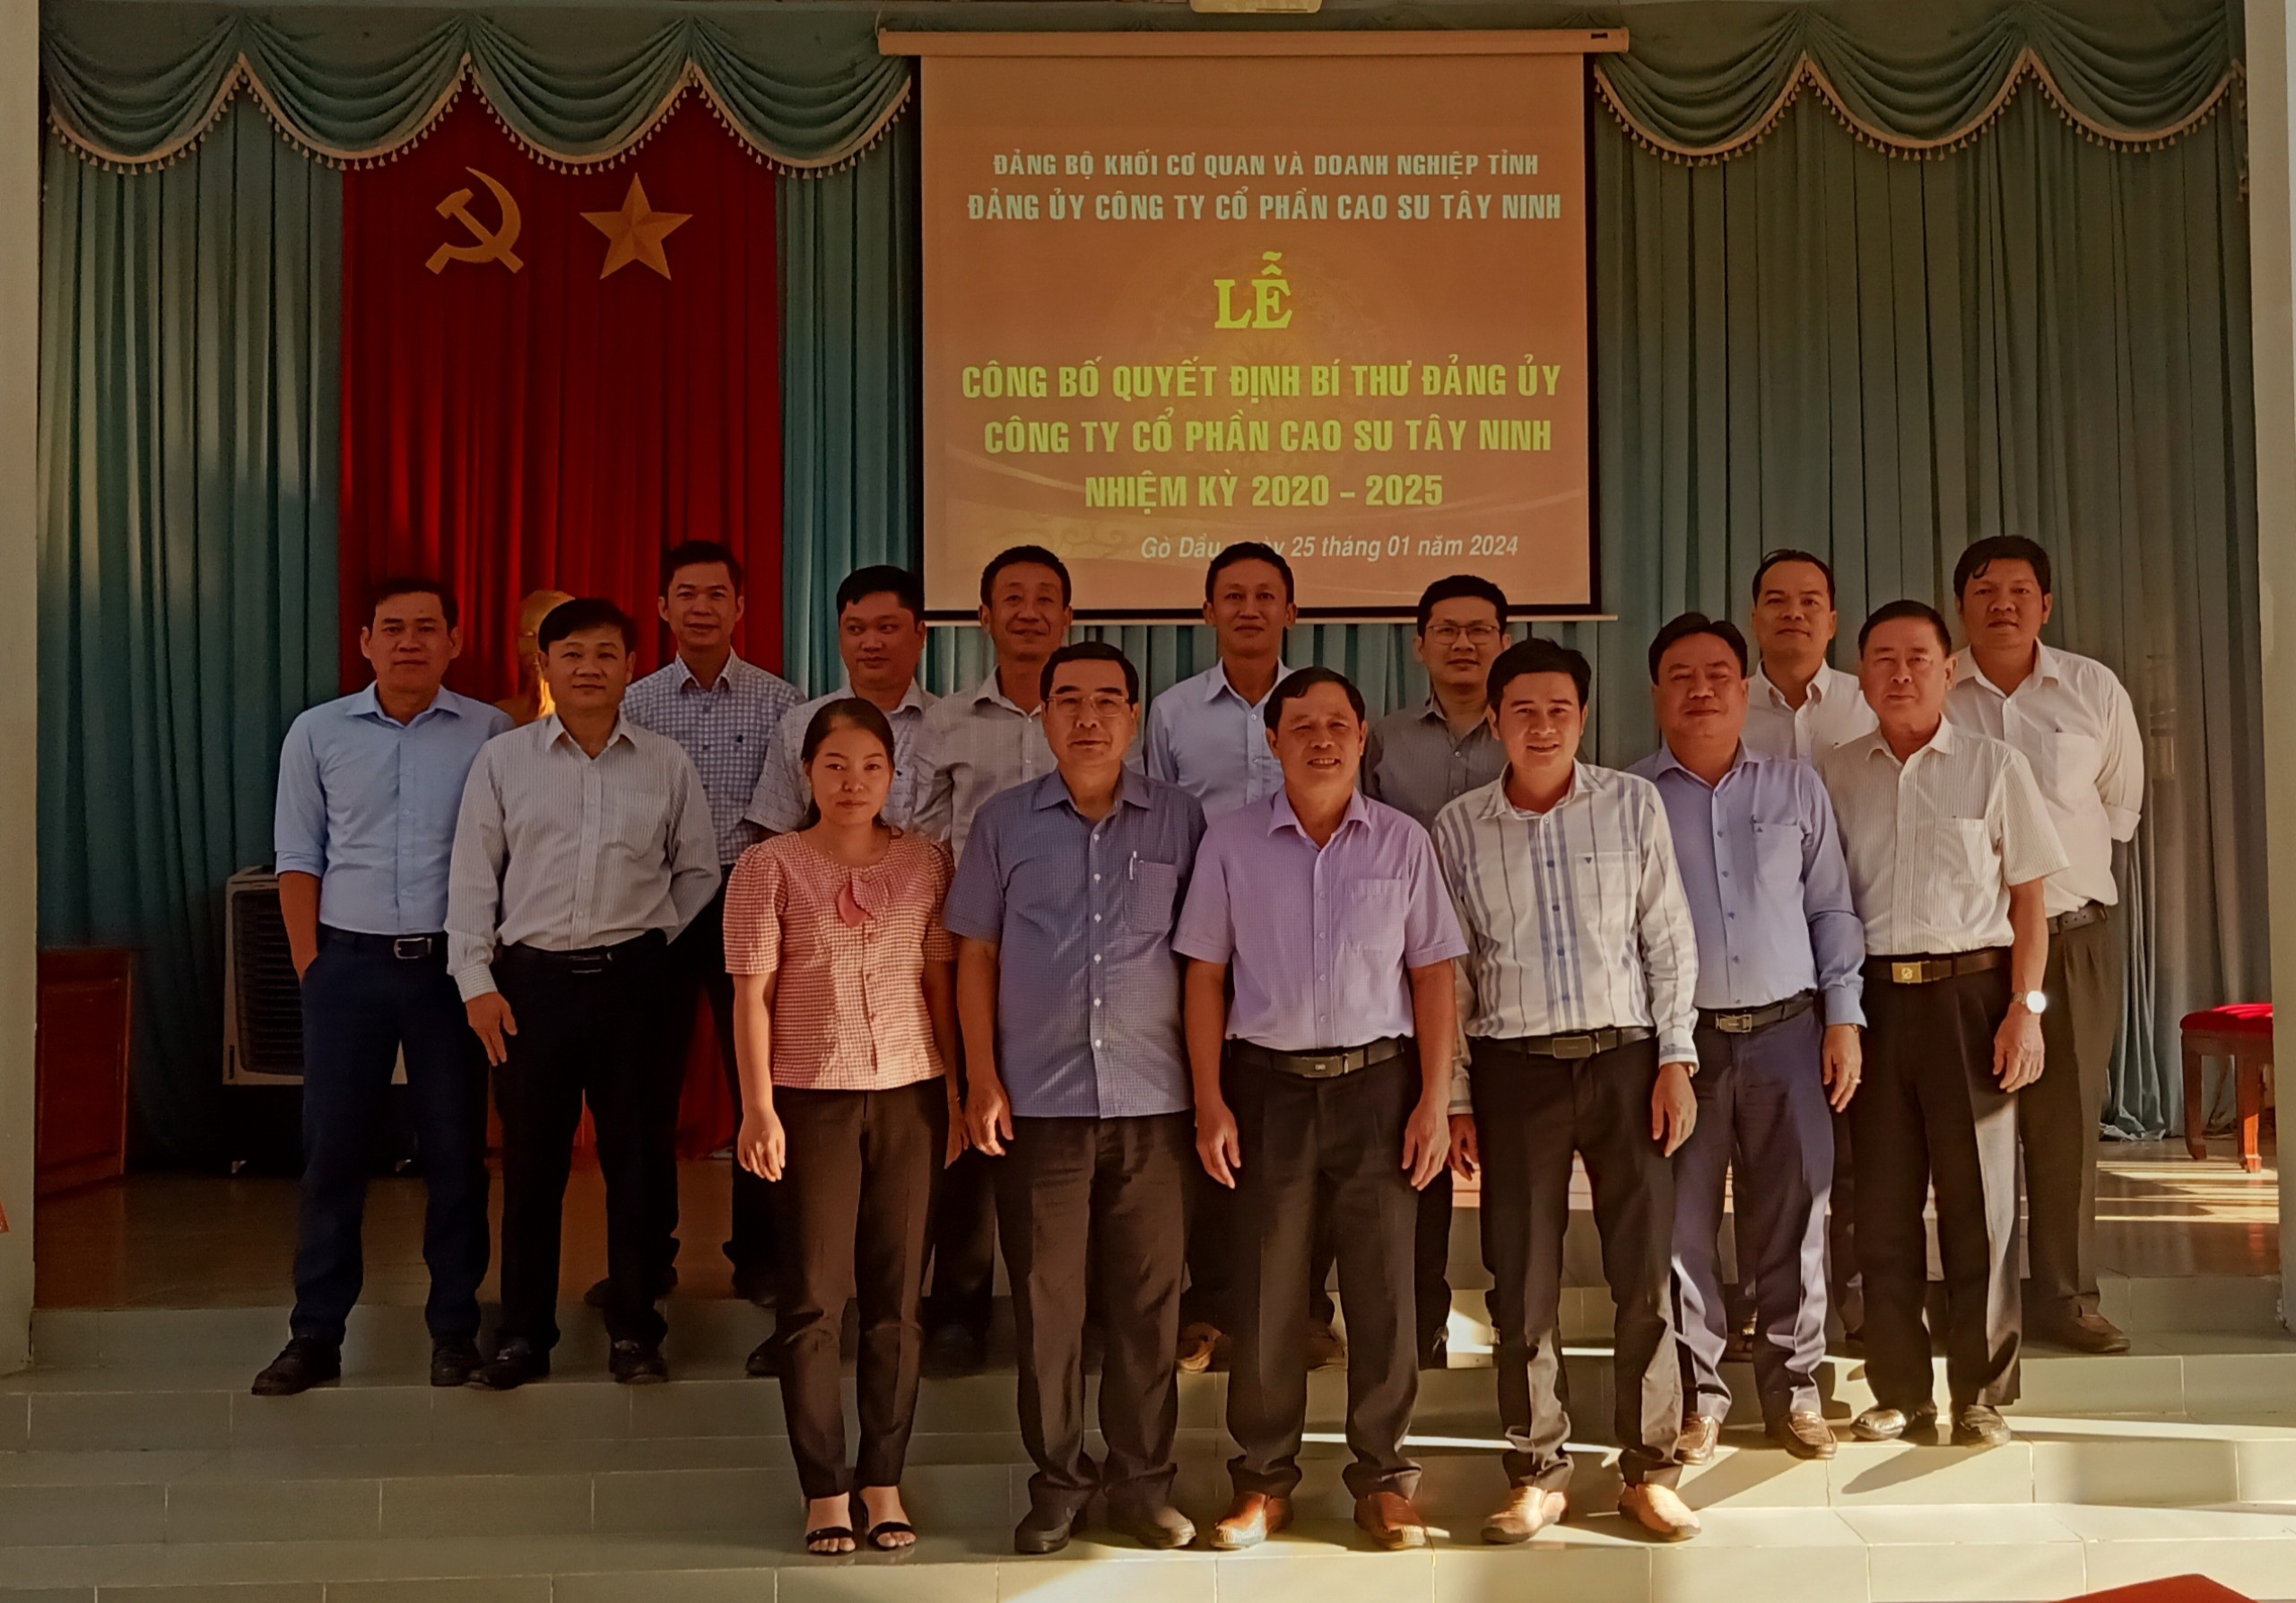 Lễ công bố quyết định Bí thư Đảng uỷ Công ty cổ phần cao su Tây Ninh